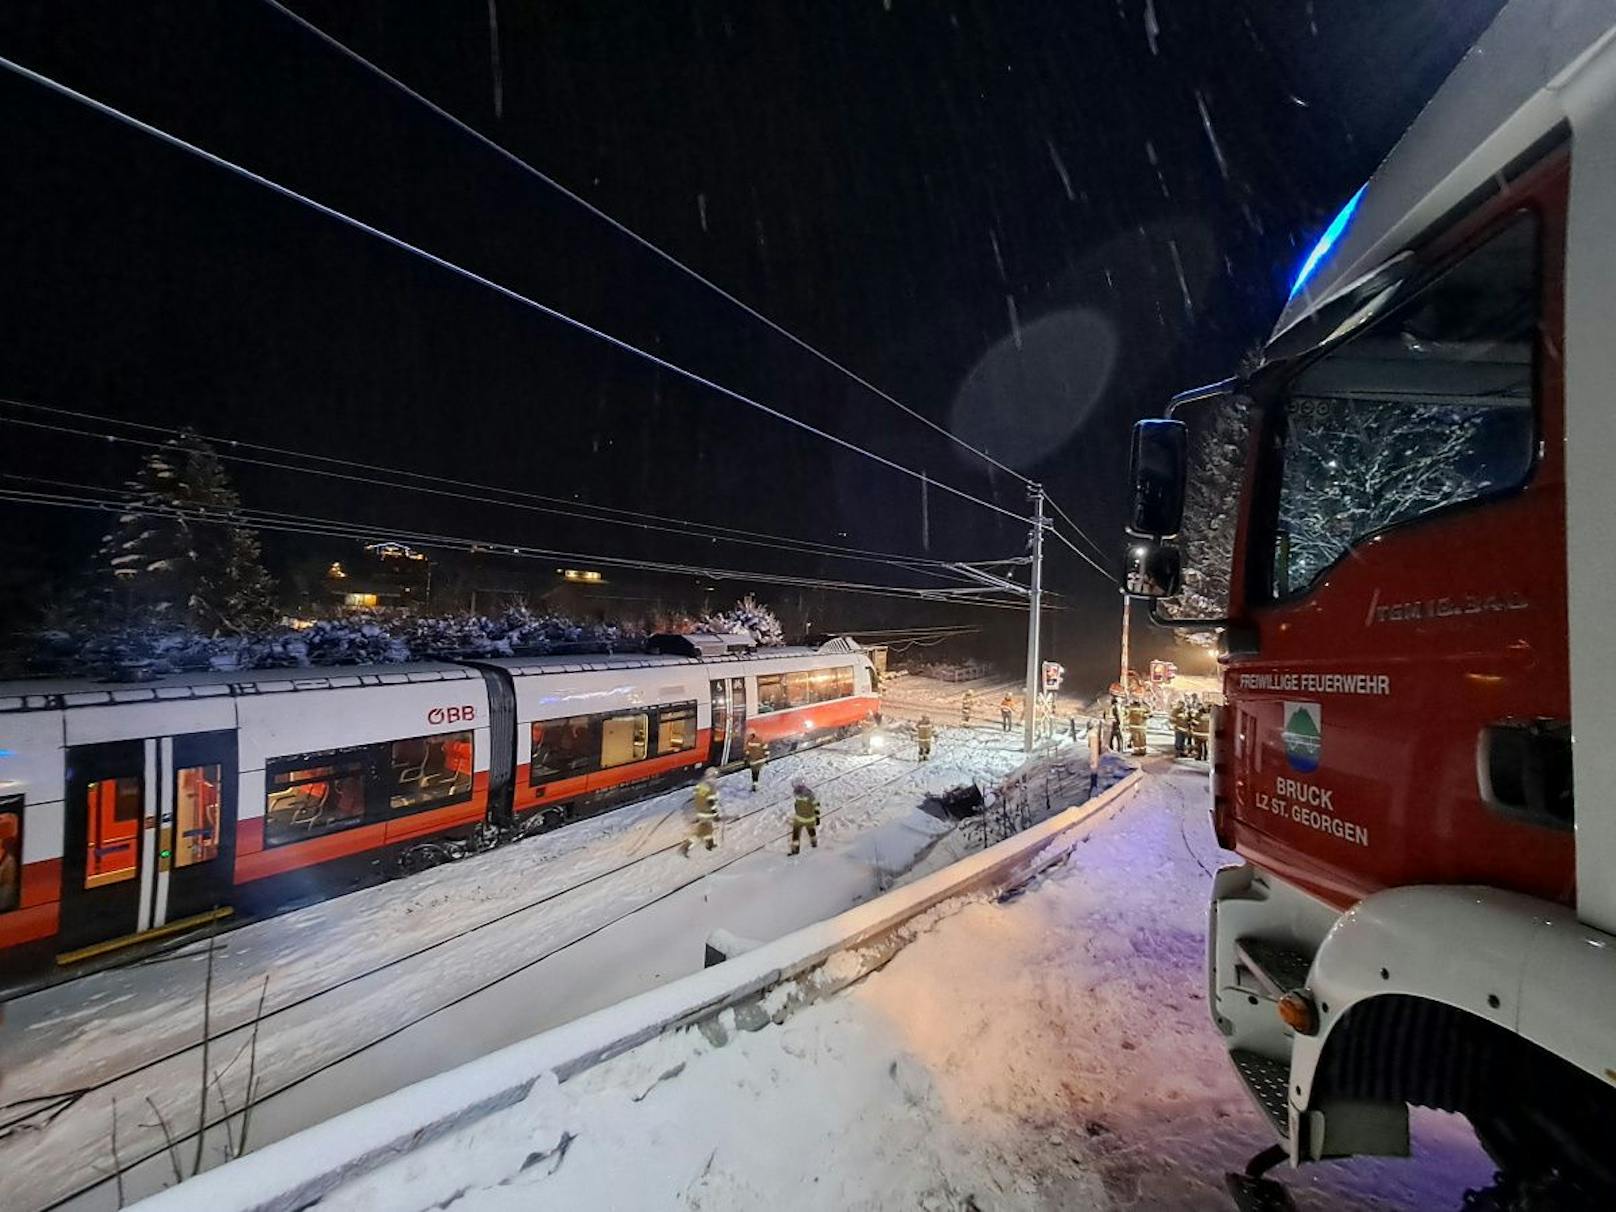 Ein Lkw mit Tieflader blieb hier aufgrund der winterlichen Fahrverhältnisse – <a target="_blank" data-li-document-ref="100250829" href="https://www.heute.at/g/wetter-in-oesterreich-jede-menge-schnee-sorgt-fuer-chaos-100250829">die Winter-Walze hatte Österreich voll getroffen</a> – auf einem Bahnübergang hängen.